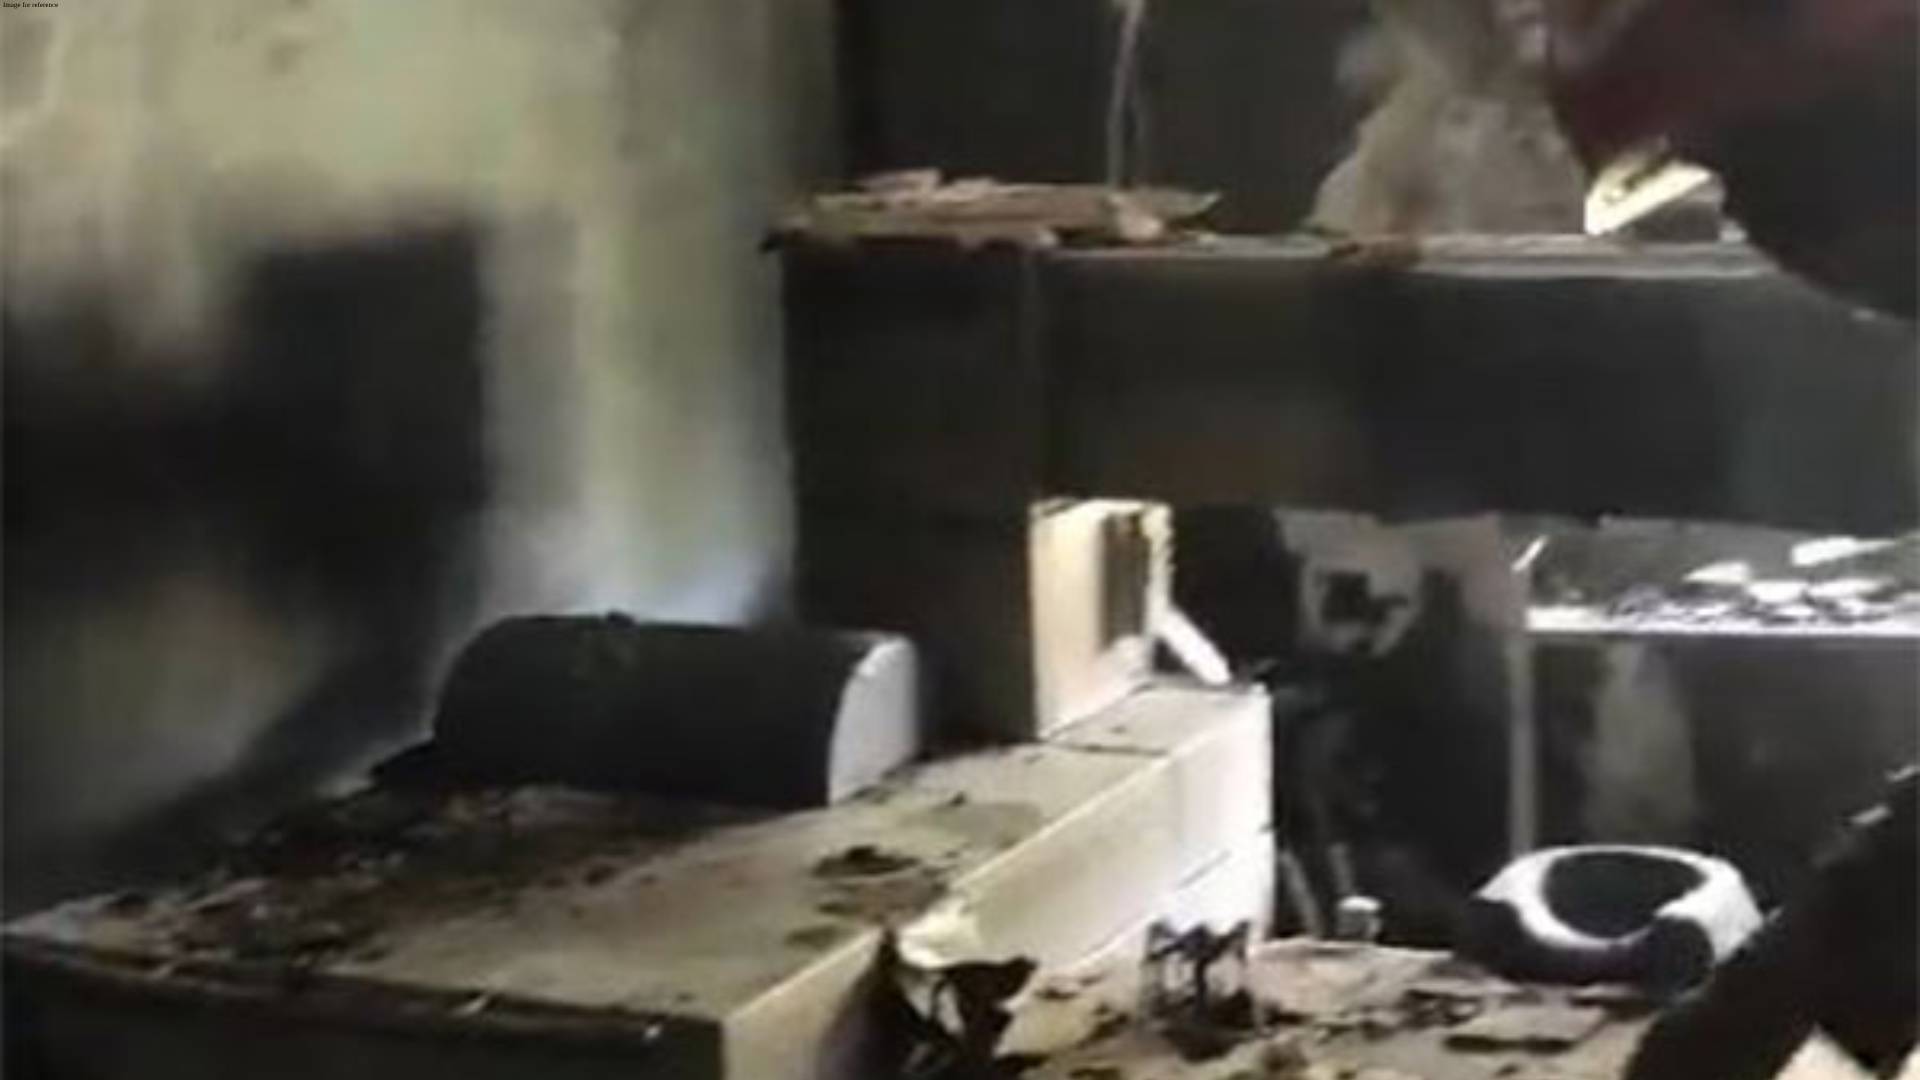 Delhi: Fire breaks out at Eye Hospital in Paschim Vihar